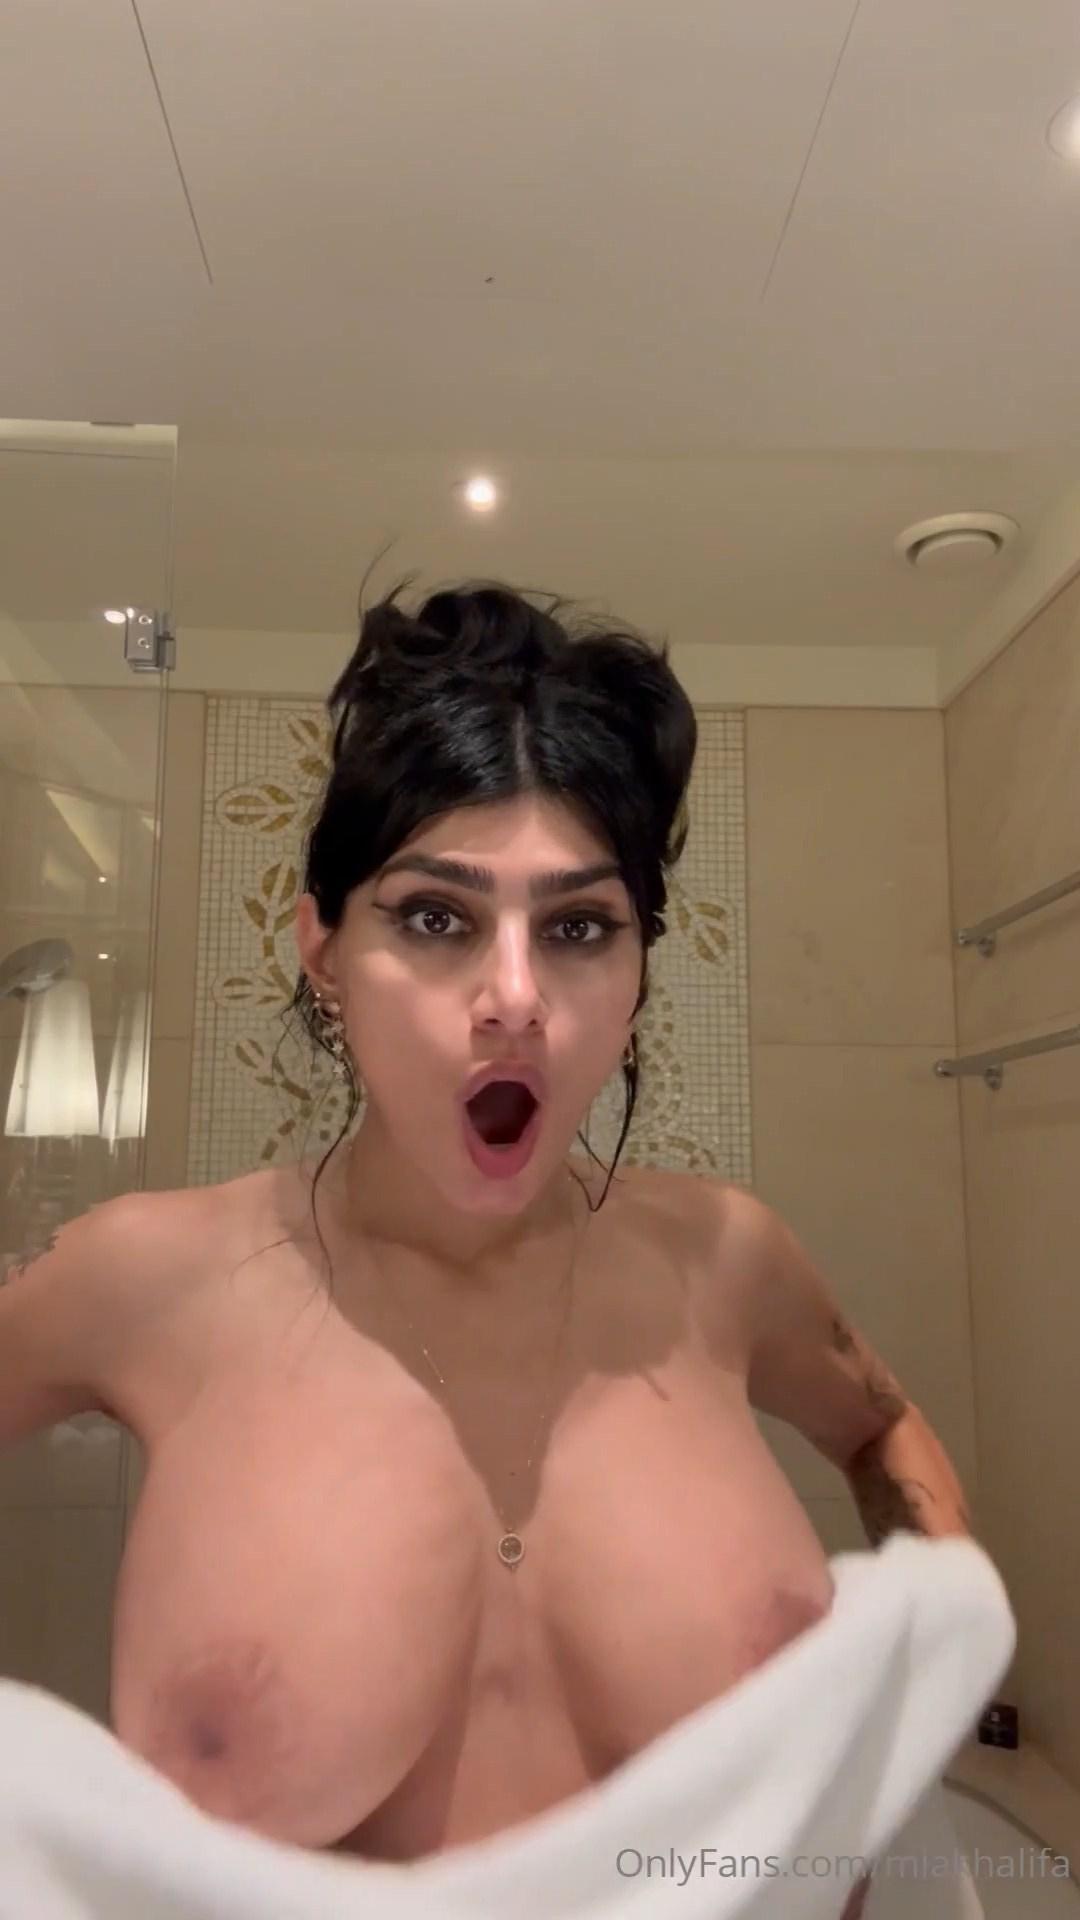 Mia Khalifa Nude Teethbrushing OnlyFans Video Leaked – Influencers GoneWild